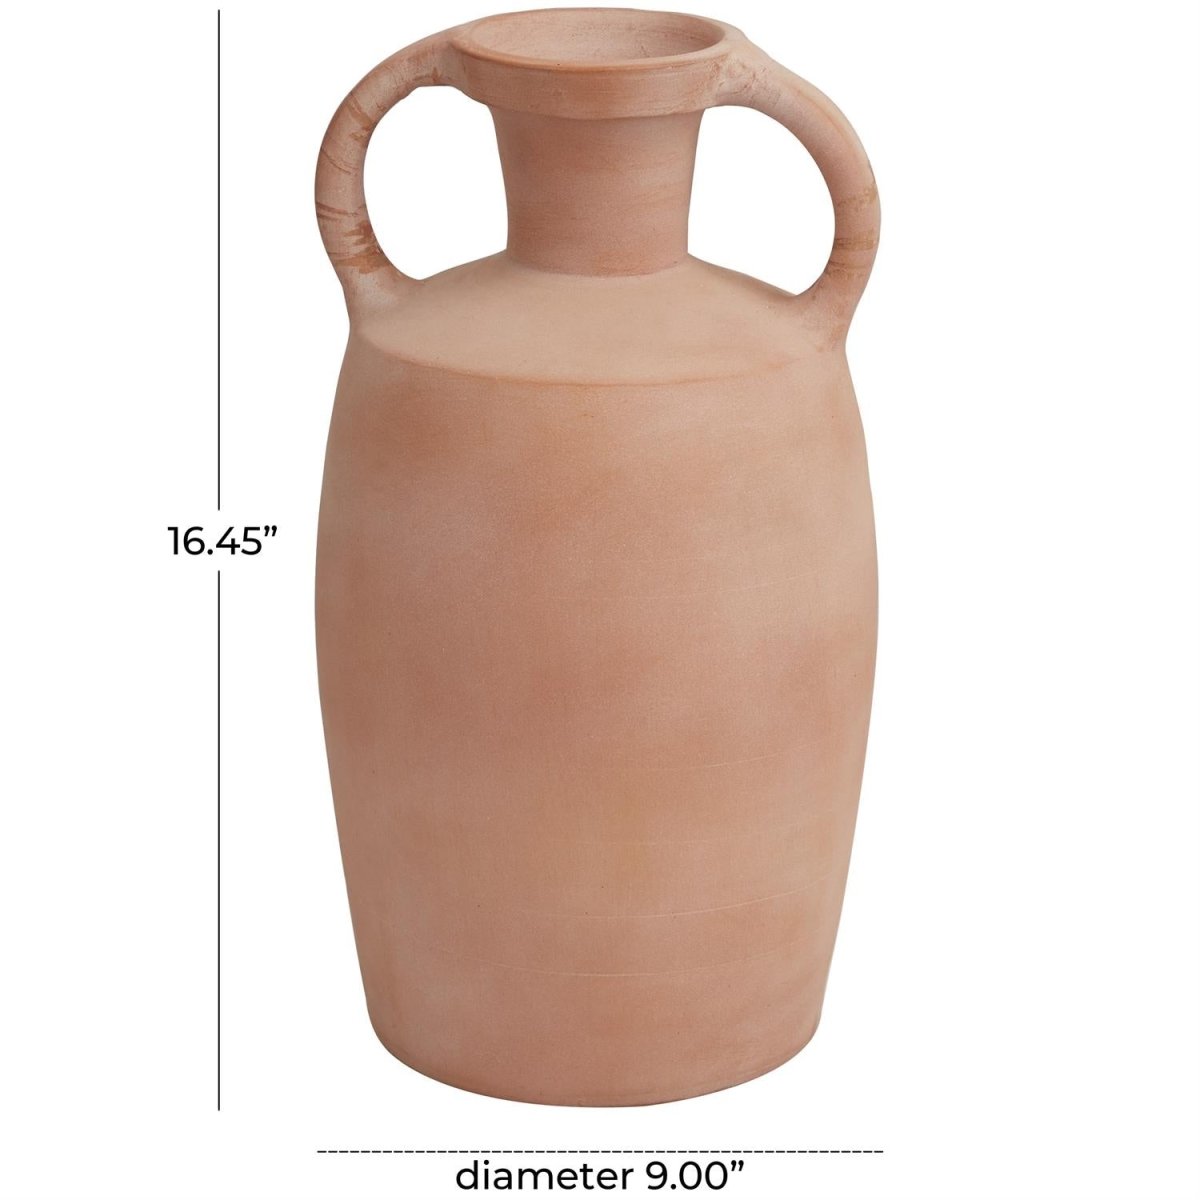 Terracotta Jug Vases